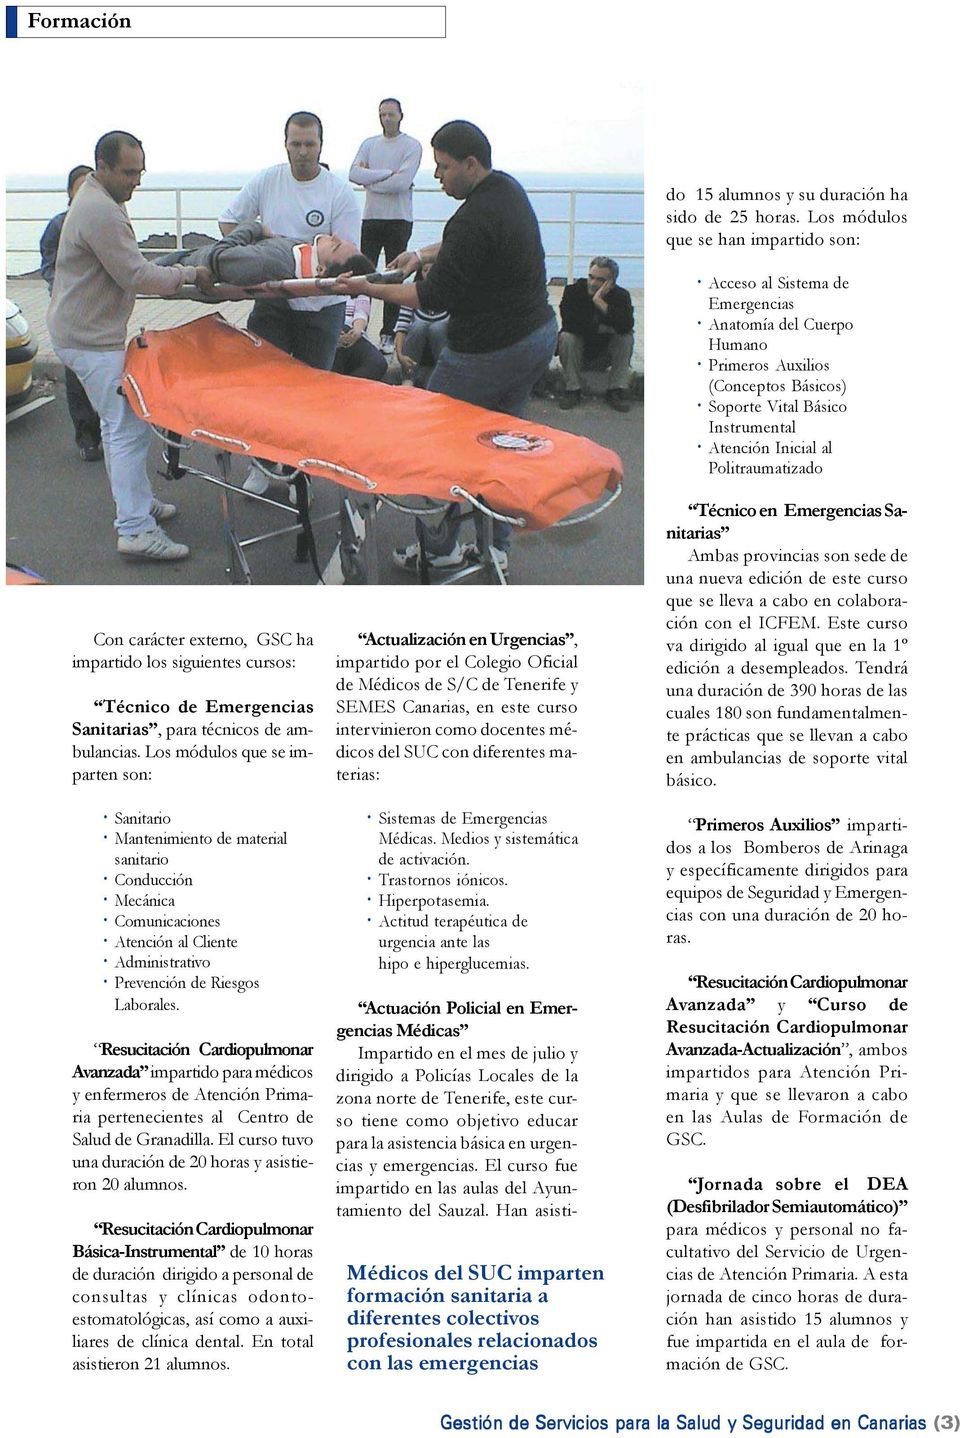 Resucitación Cardiopulmonar Avanzada impartido para médicos y enfermeros de Atención Primaria pertenecientes al Centro de Salud de Granadilla.